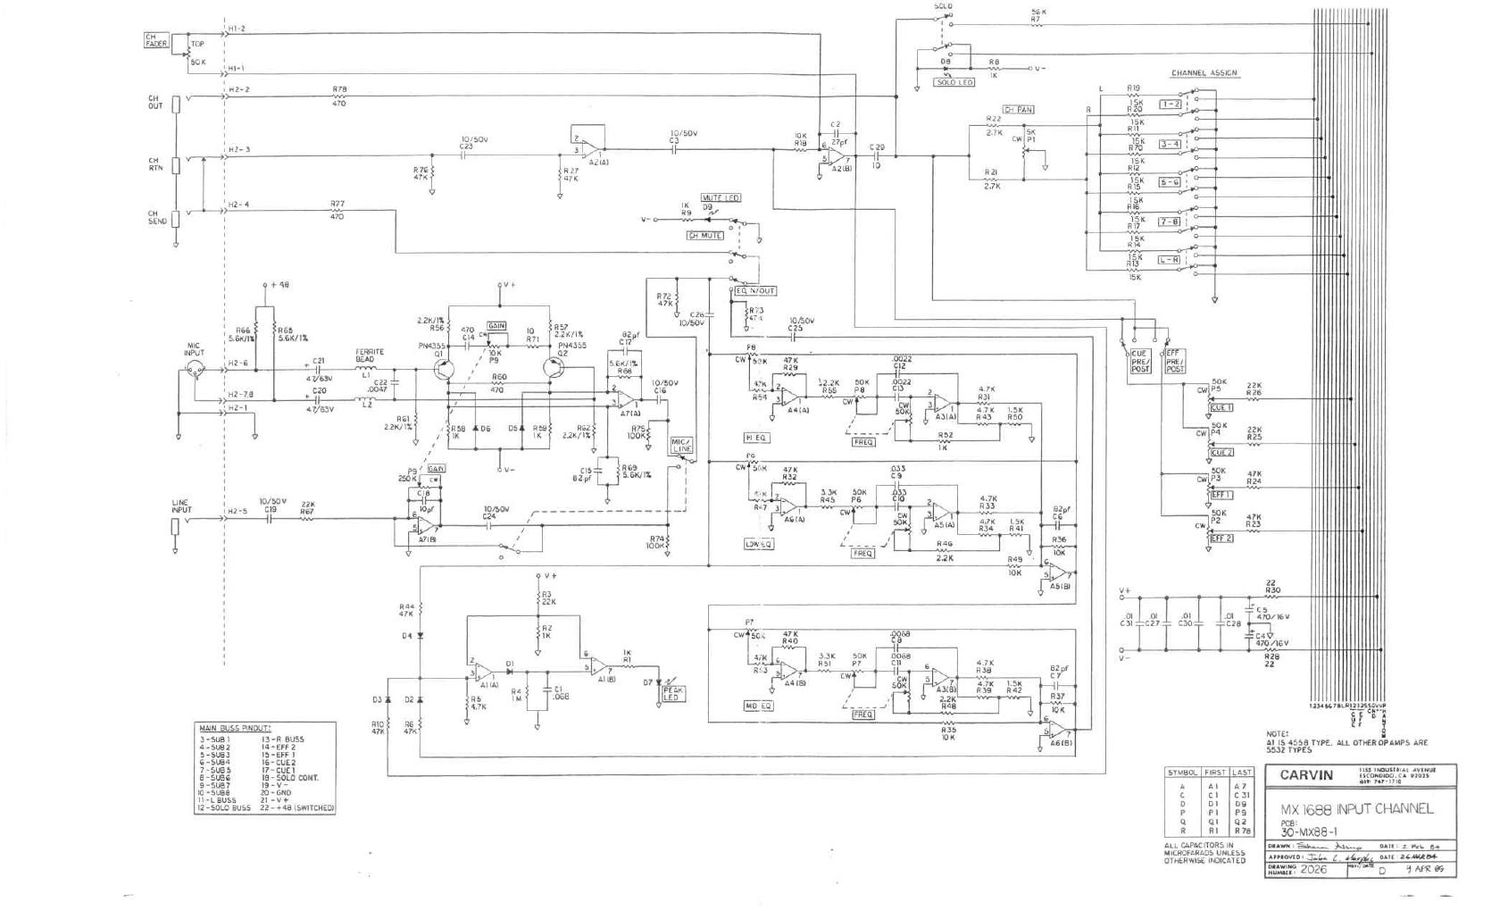 carvin mx 1688 mixer schematics